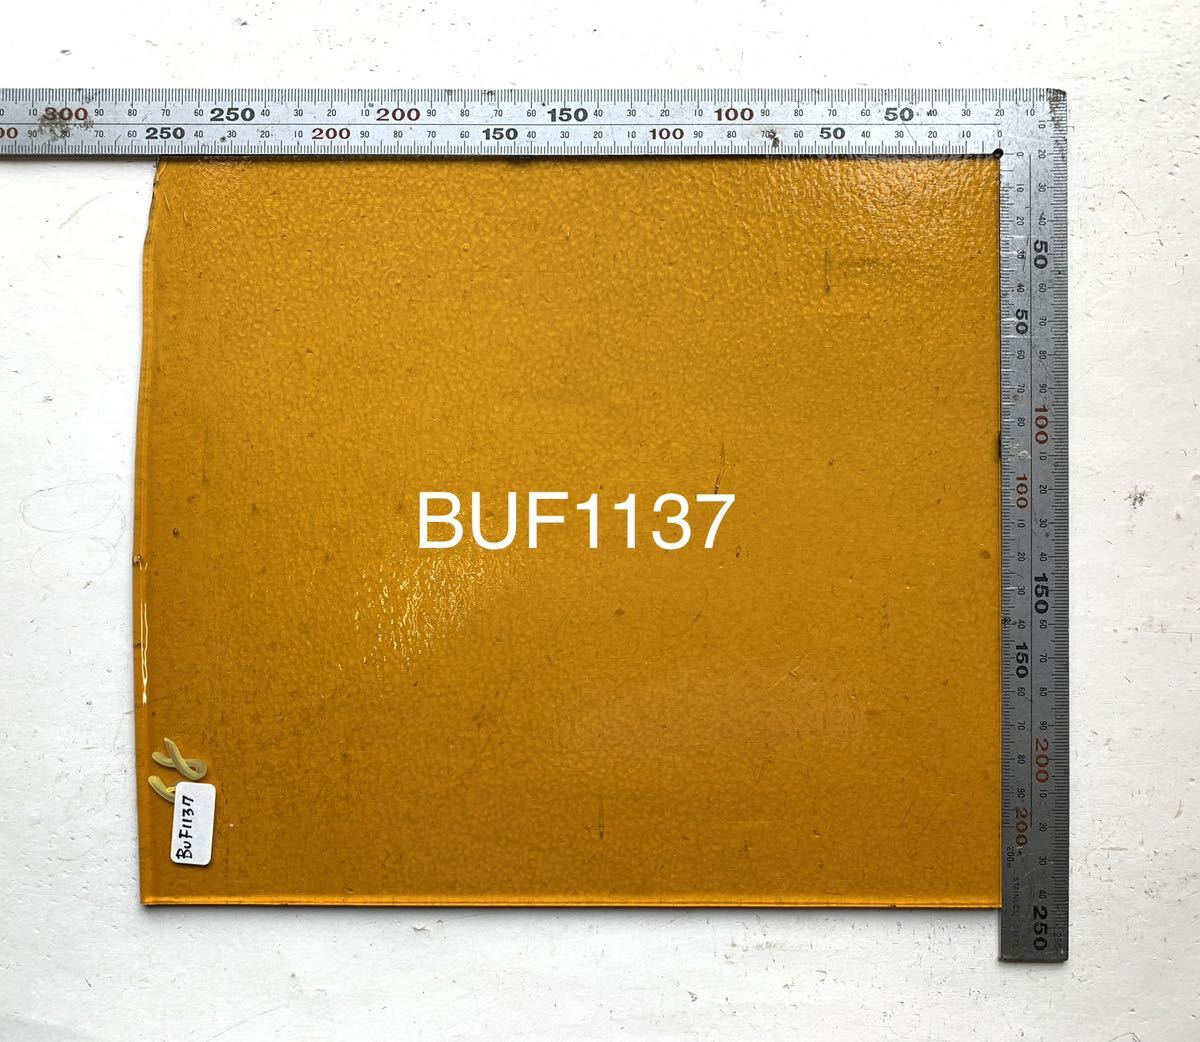 543bruz I BUF1137 medium янтарь trance пара Len to витражное стекло f.- Gin g материал расширение показатель 90